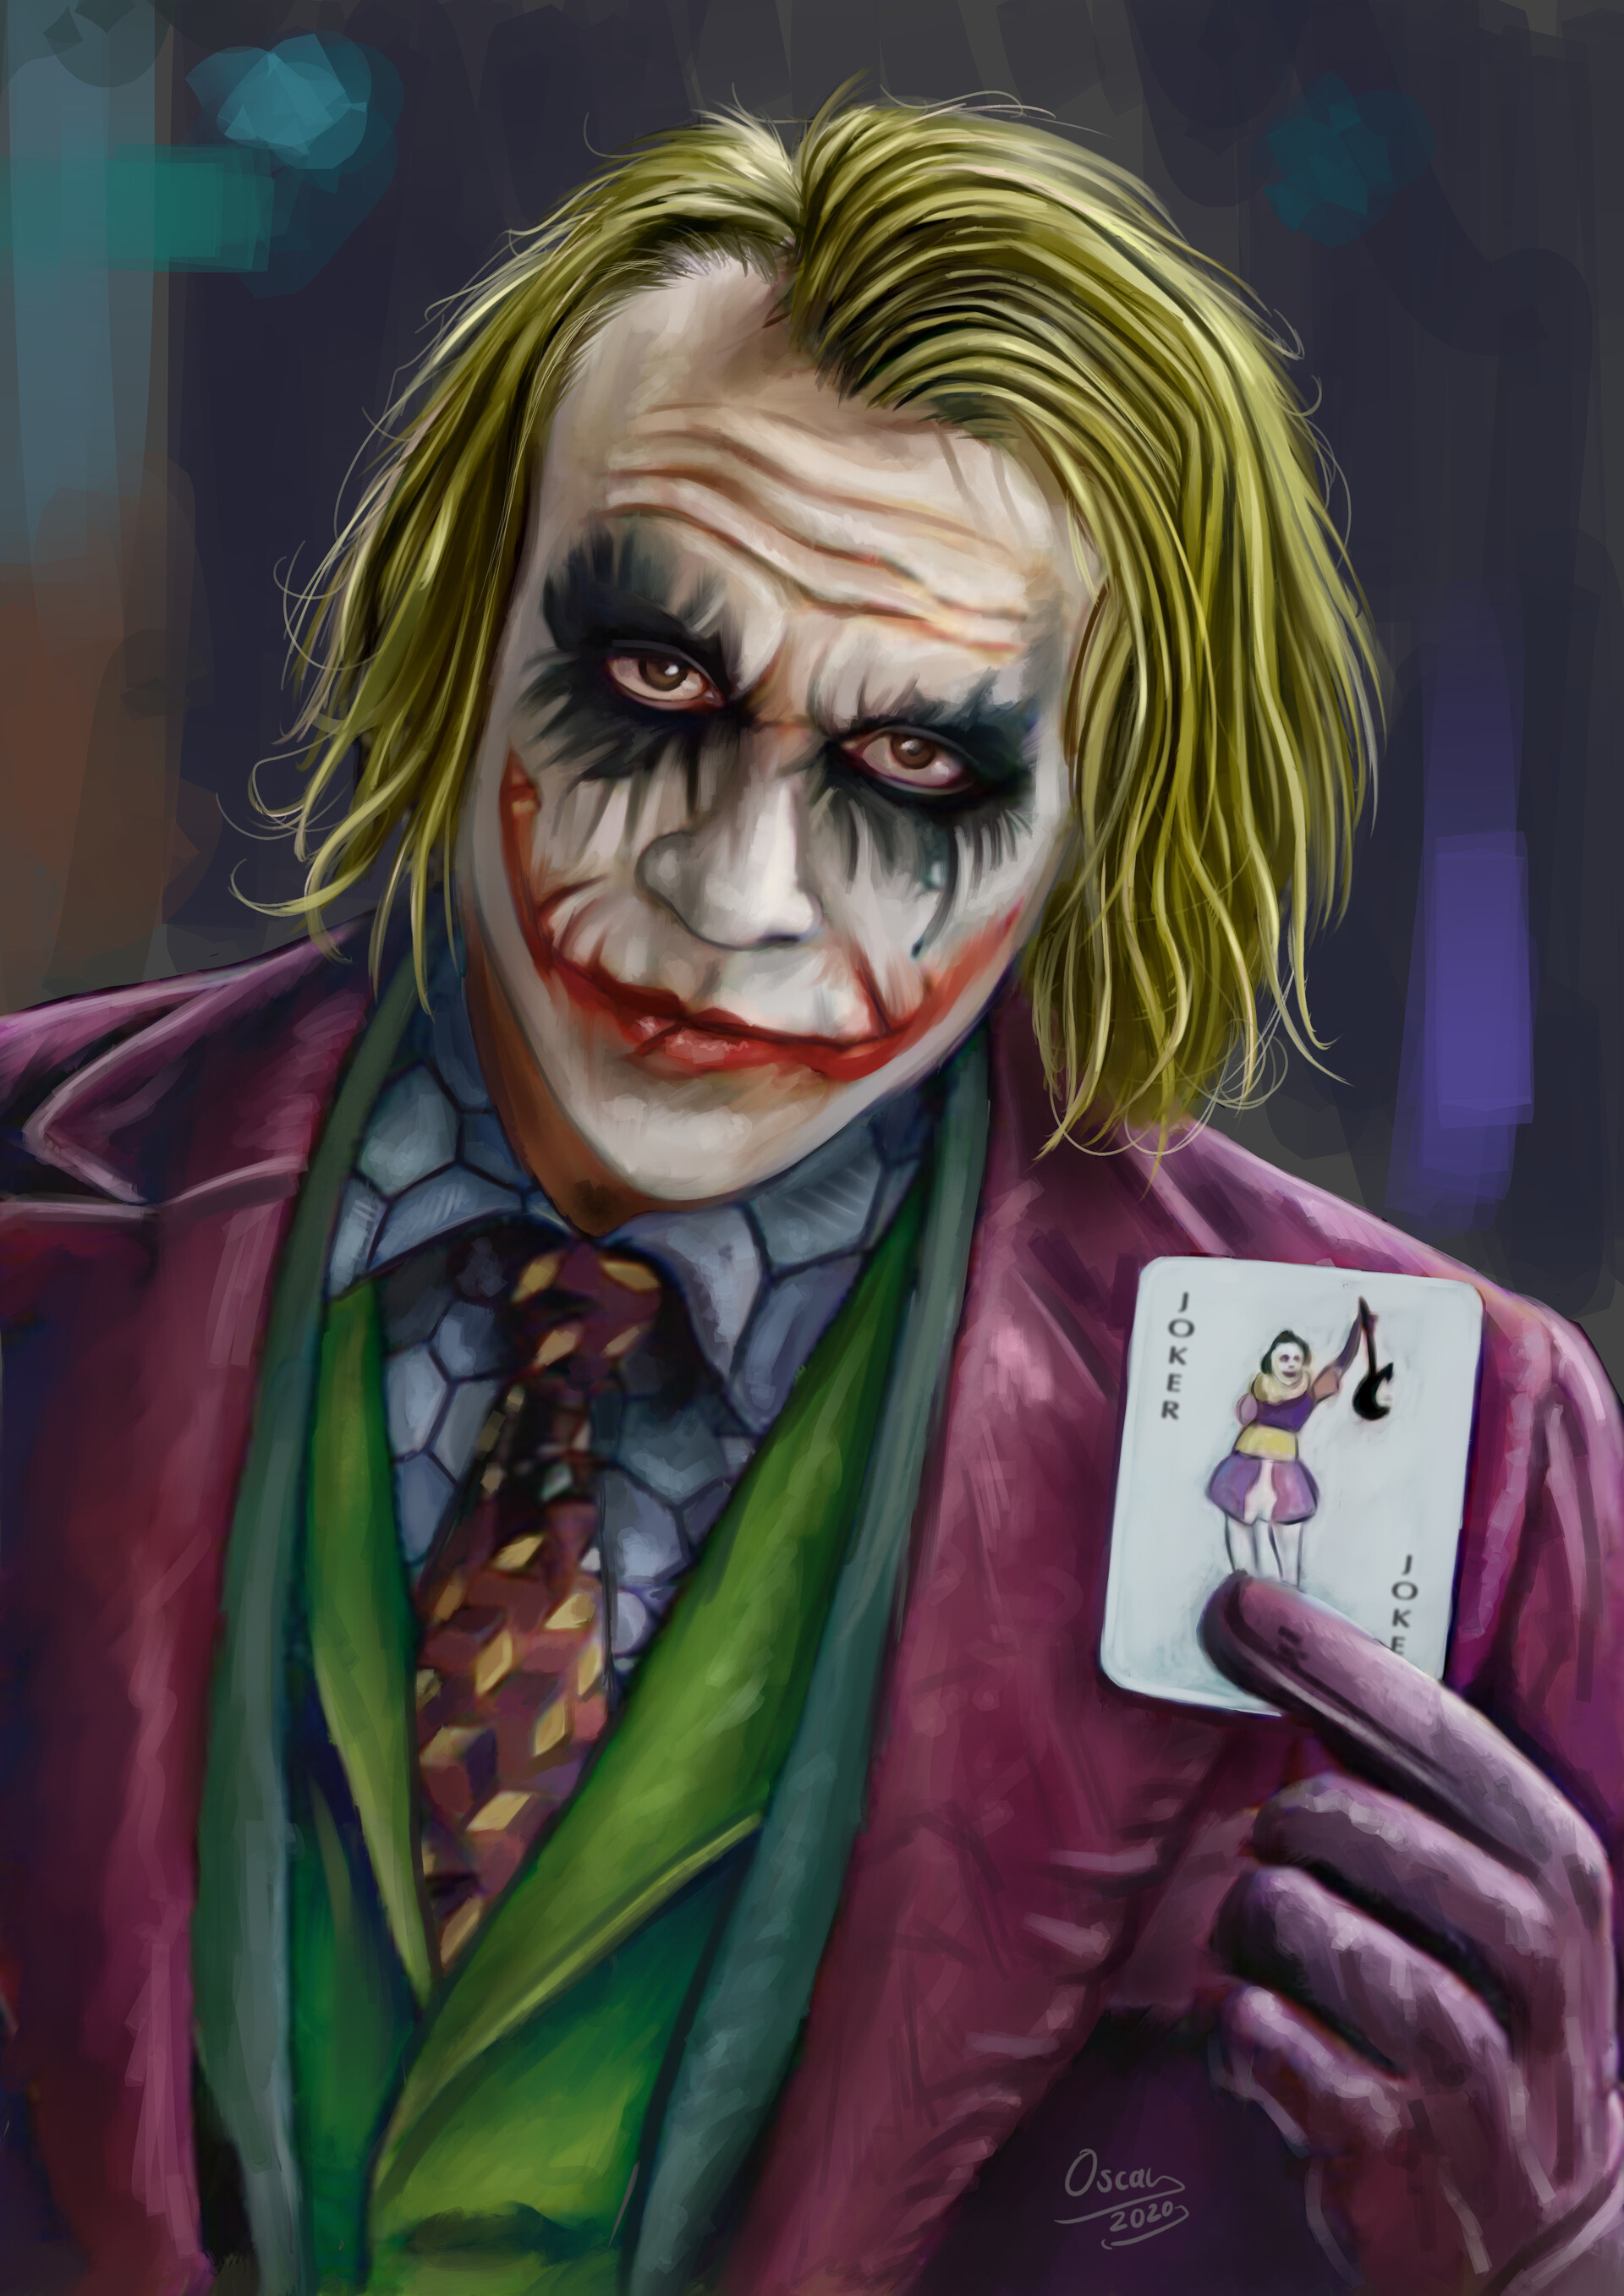 ArtStation - The Joker